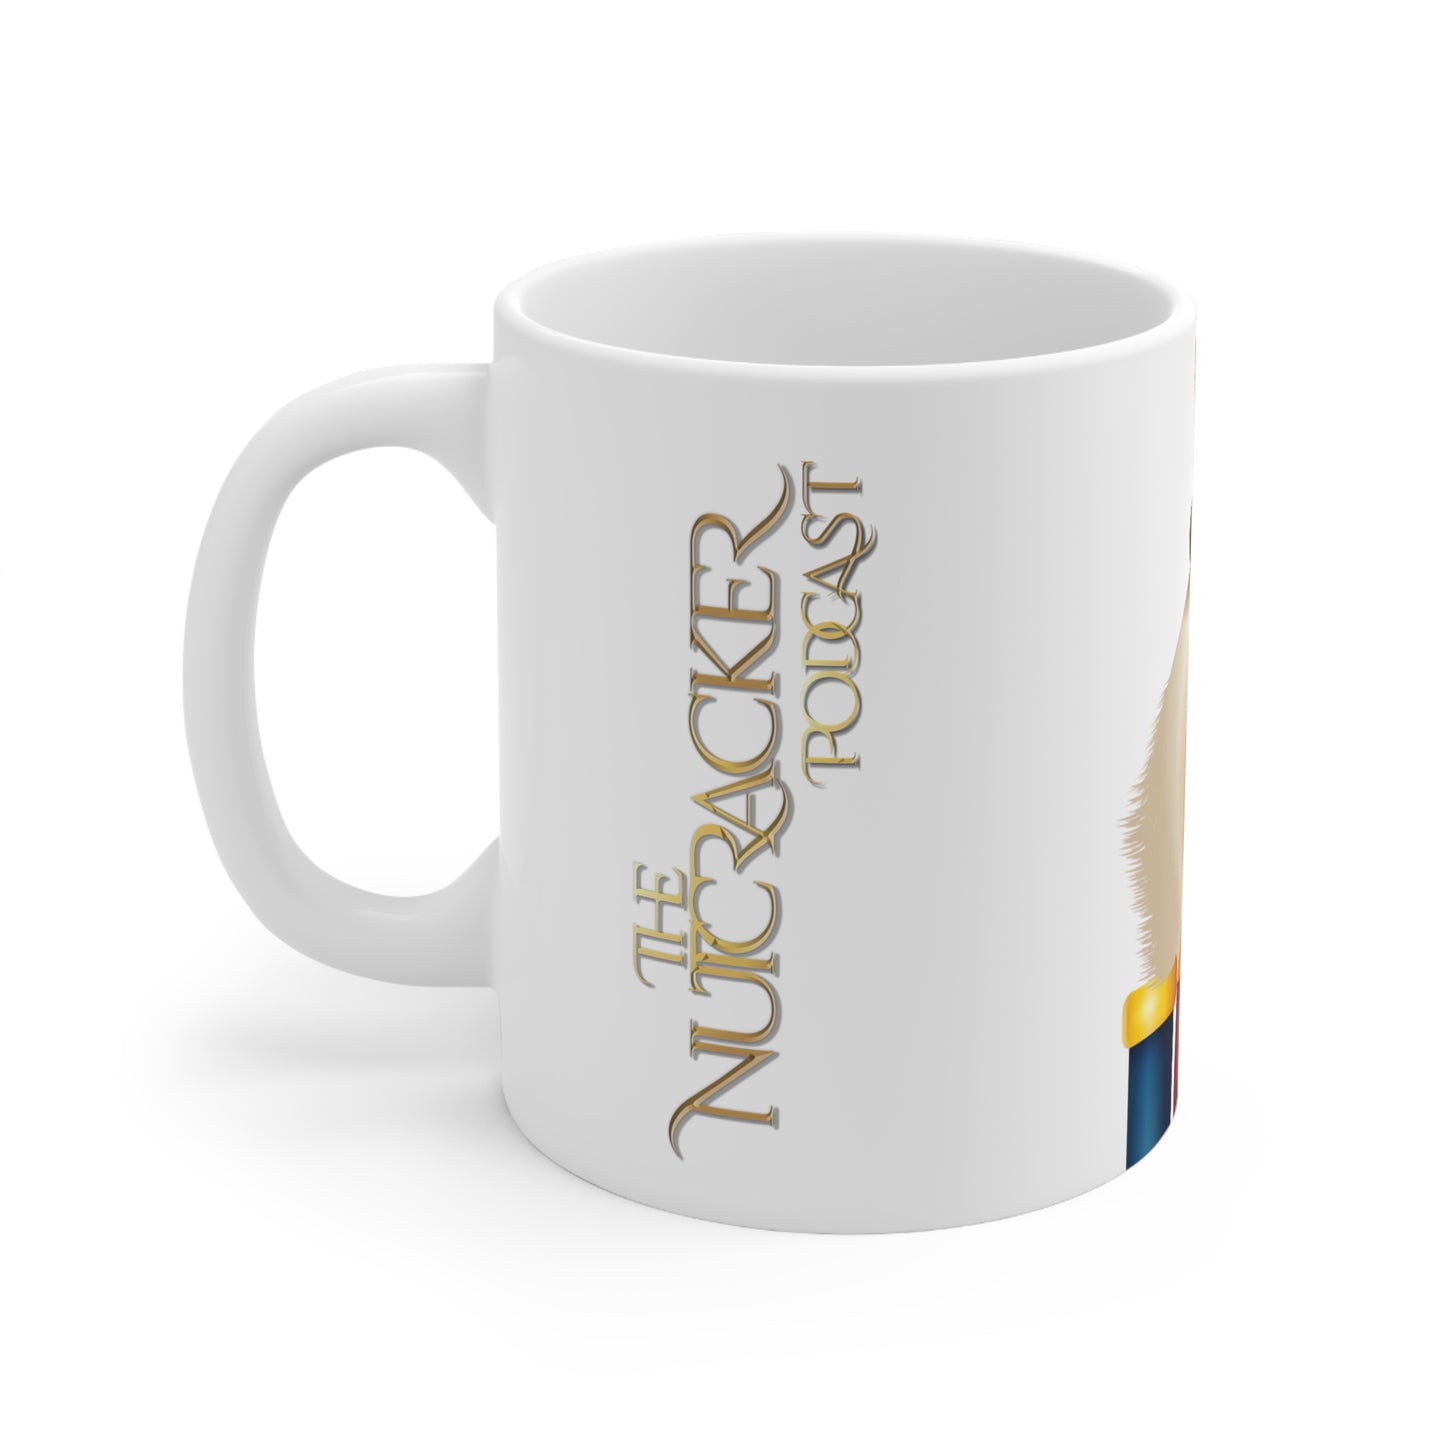 ''The nutcracker podcast'' mug